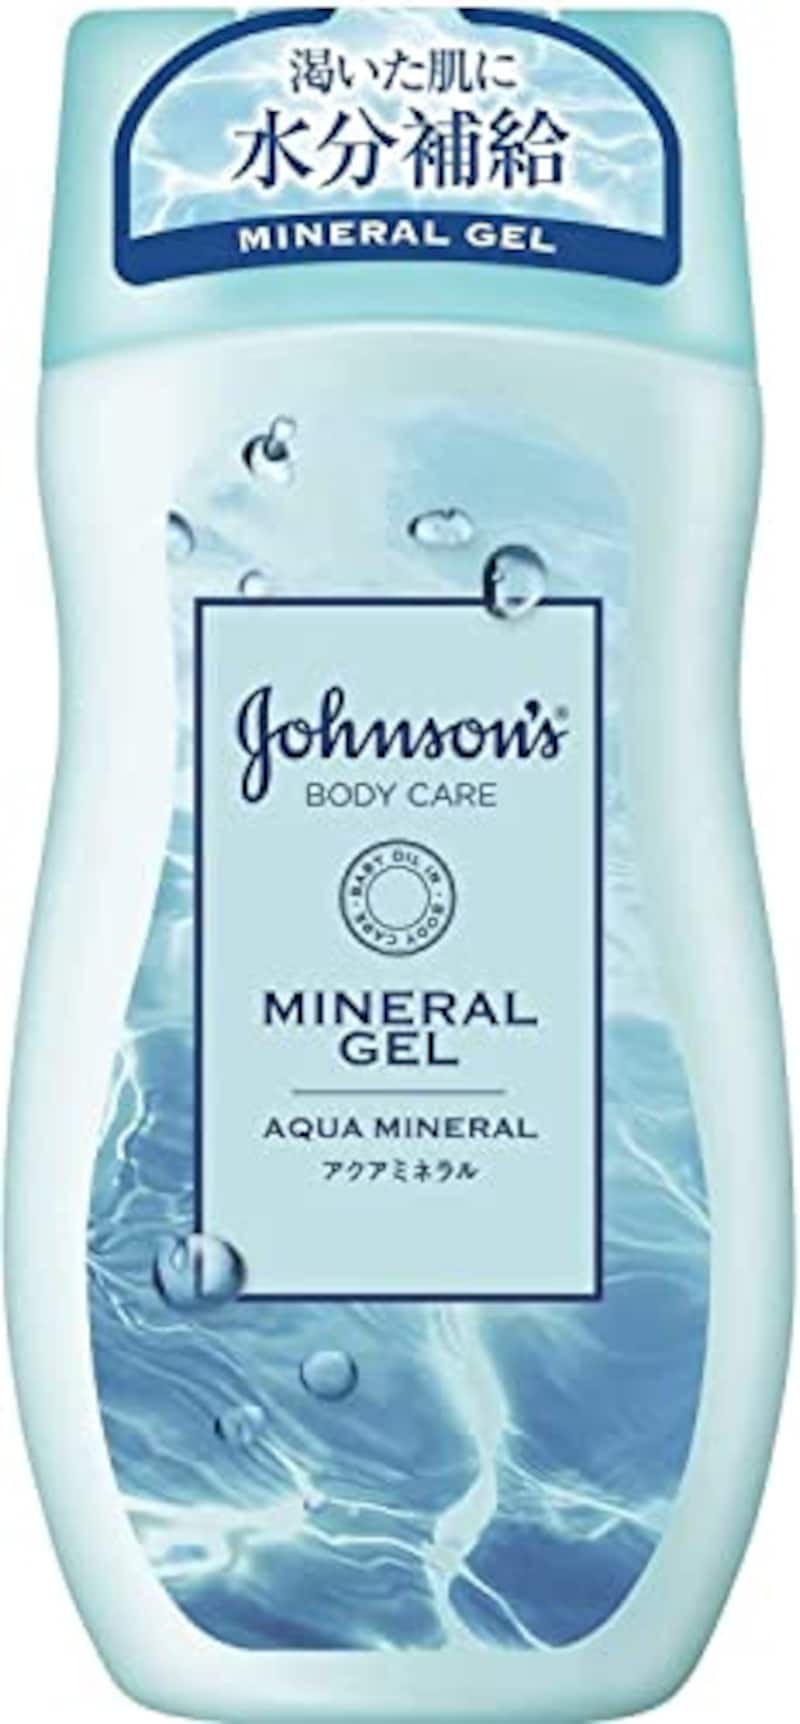 Johnson's bodycare（ジョンソンボディケア）,ミネラルジェリーローション アクアミネラルの香り